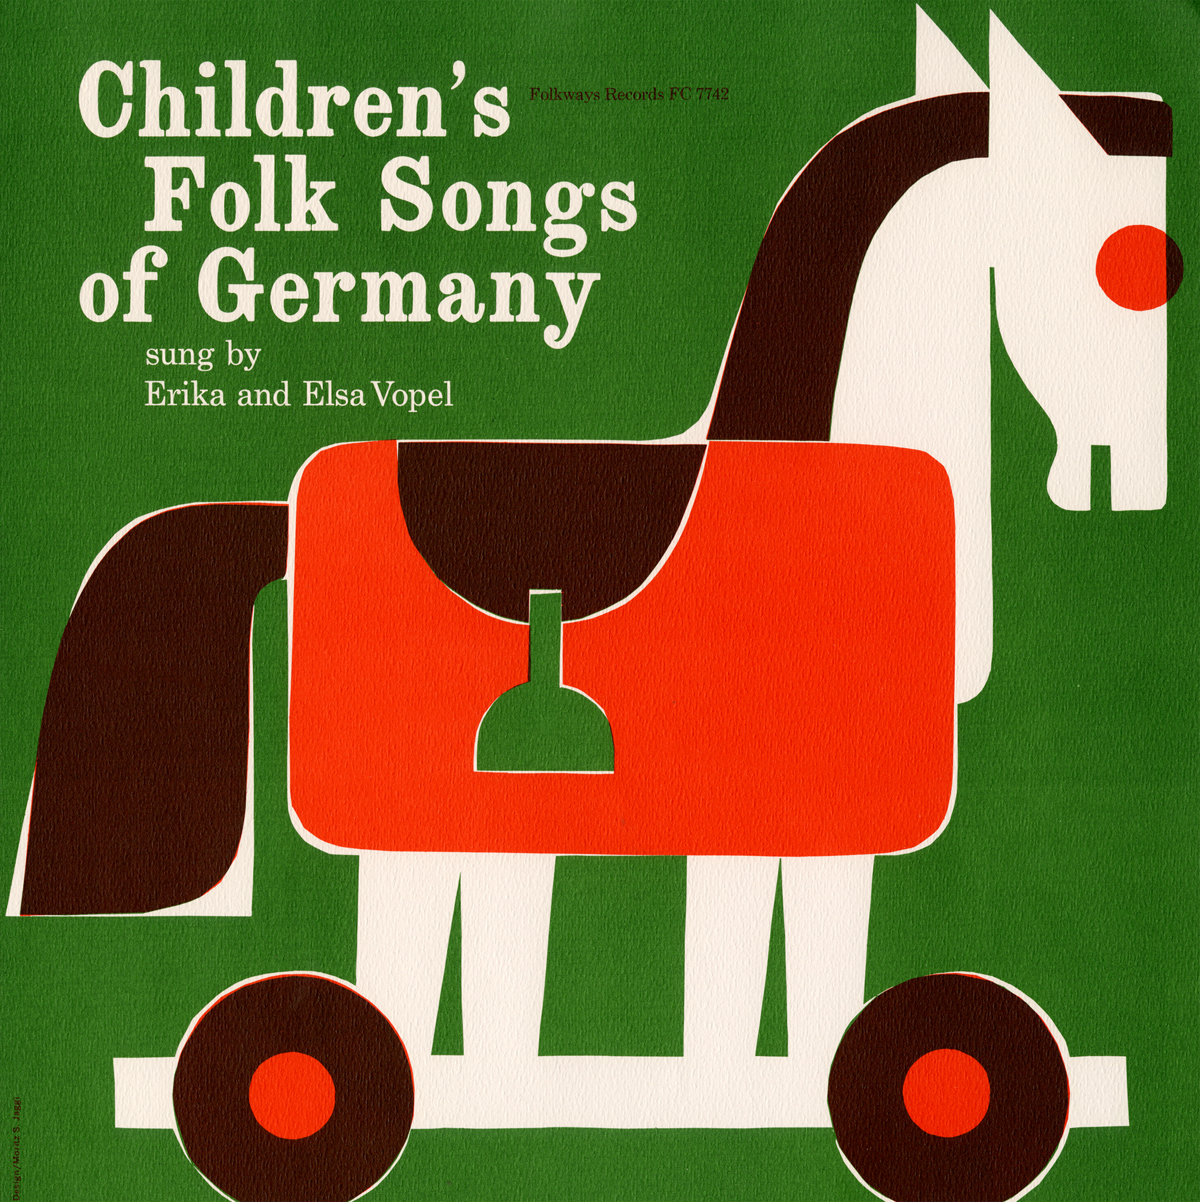 CHILDREN'S FOLK SONGS OF GERMANY